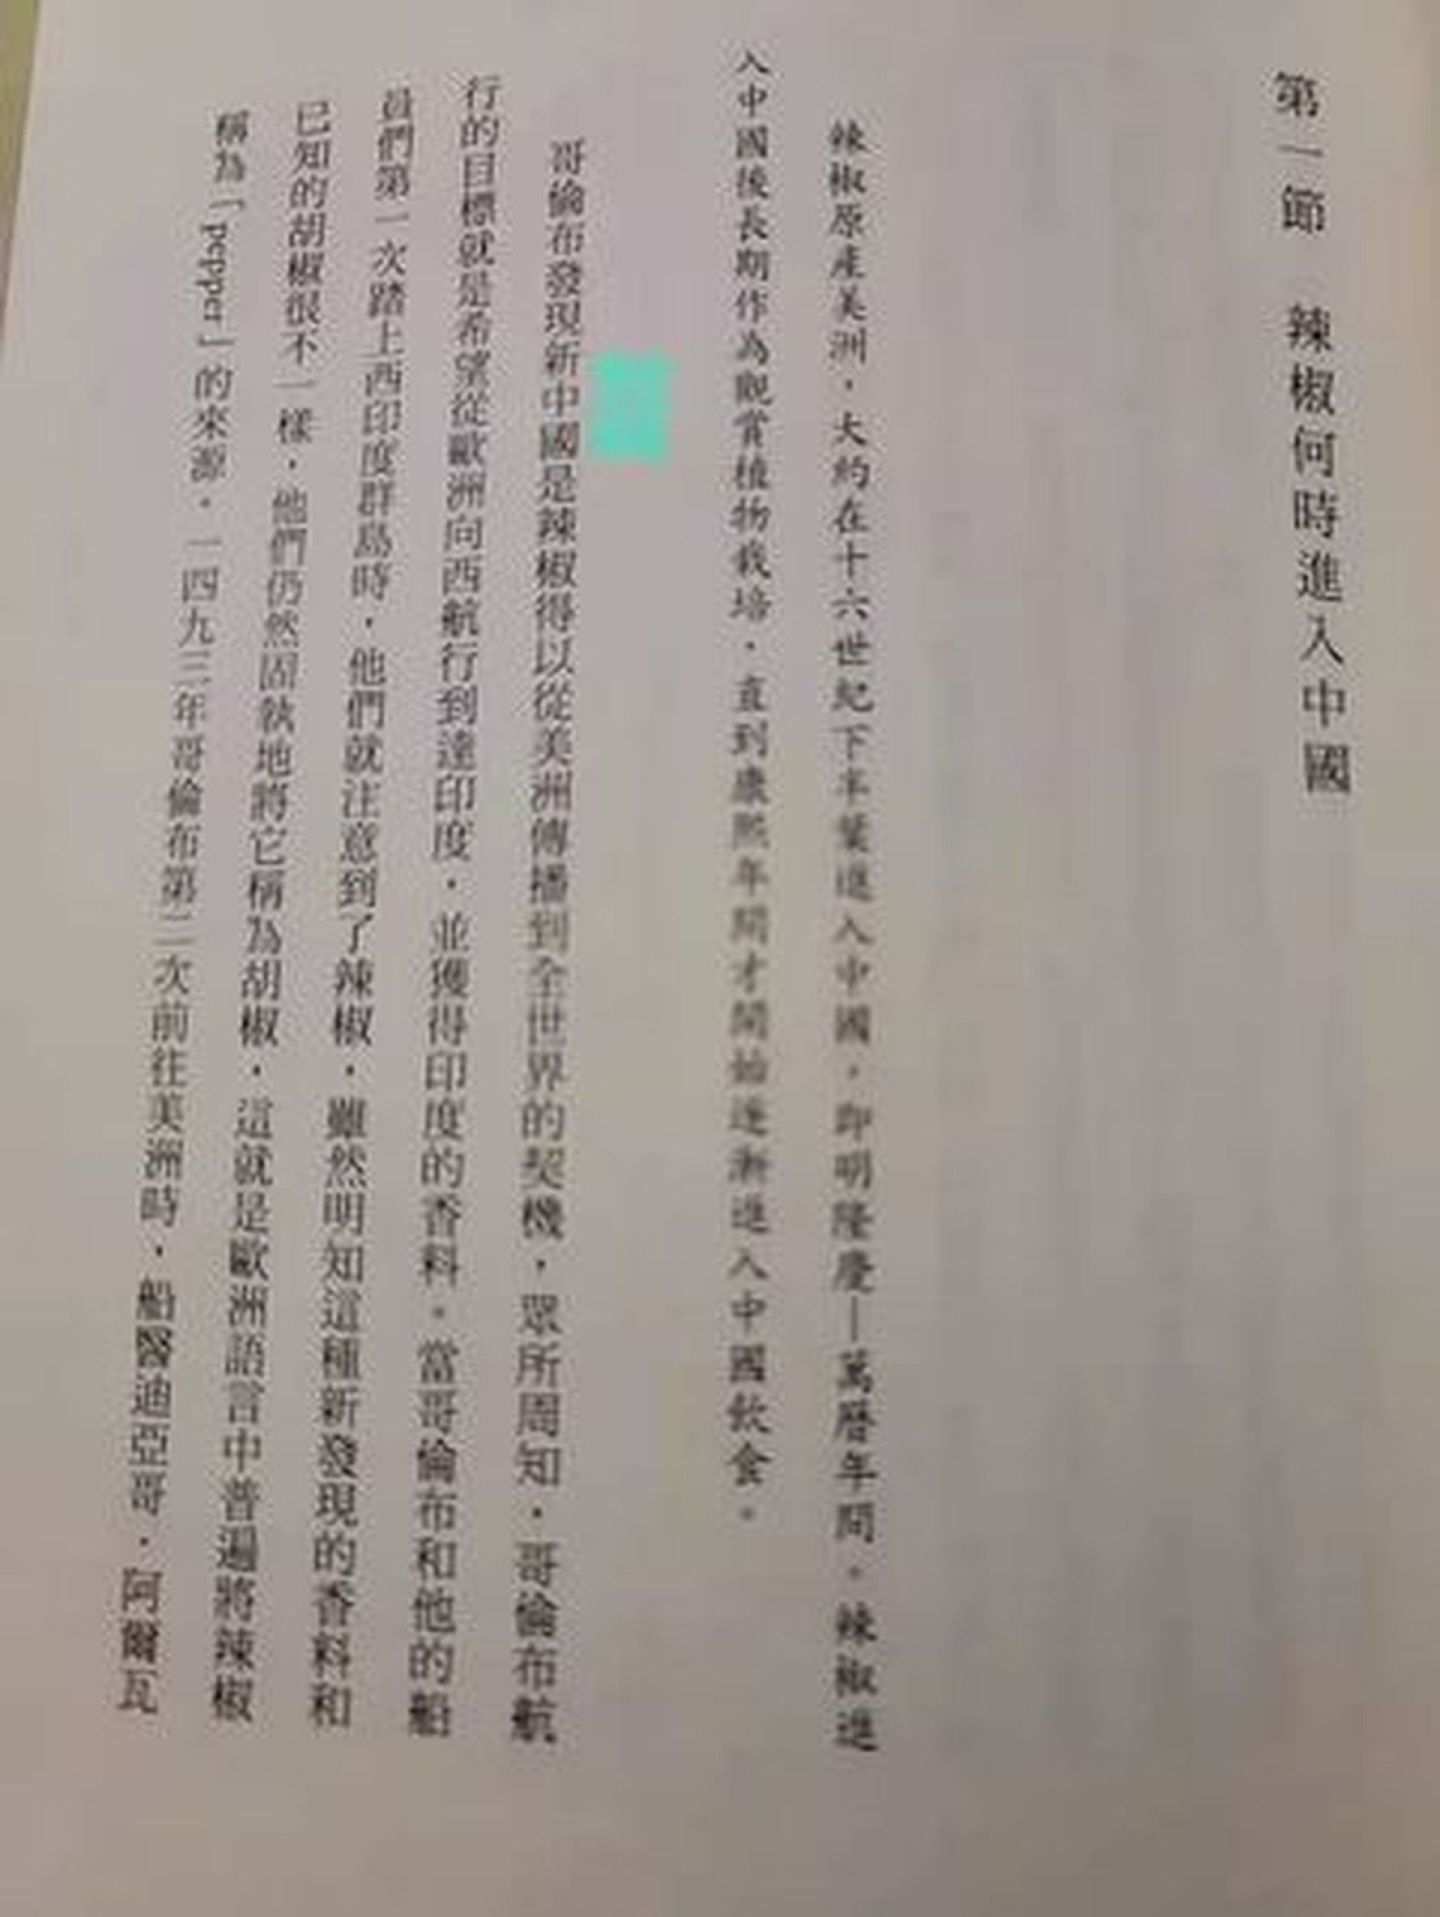 近期大陆学者在台湾出版新书，书中“哥伦布发现新大陆”被一键替换为“哥伦布发现新中国”。（Facebook@曹雨）